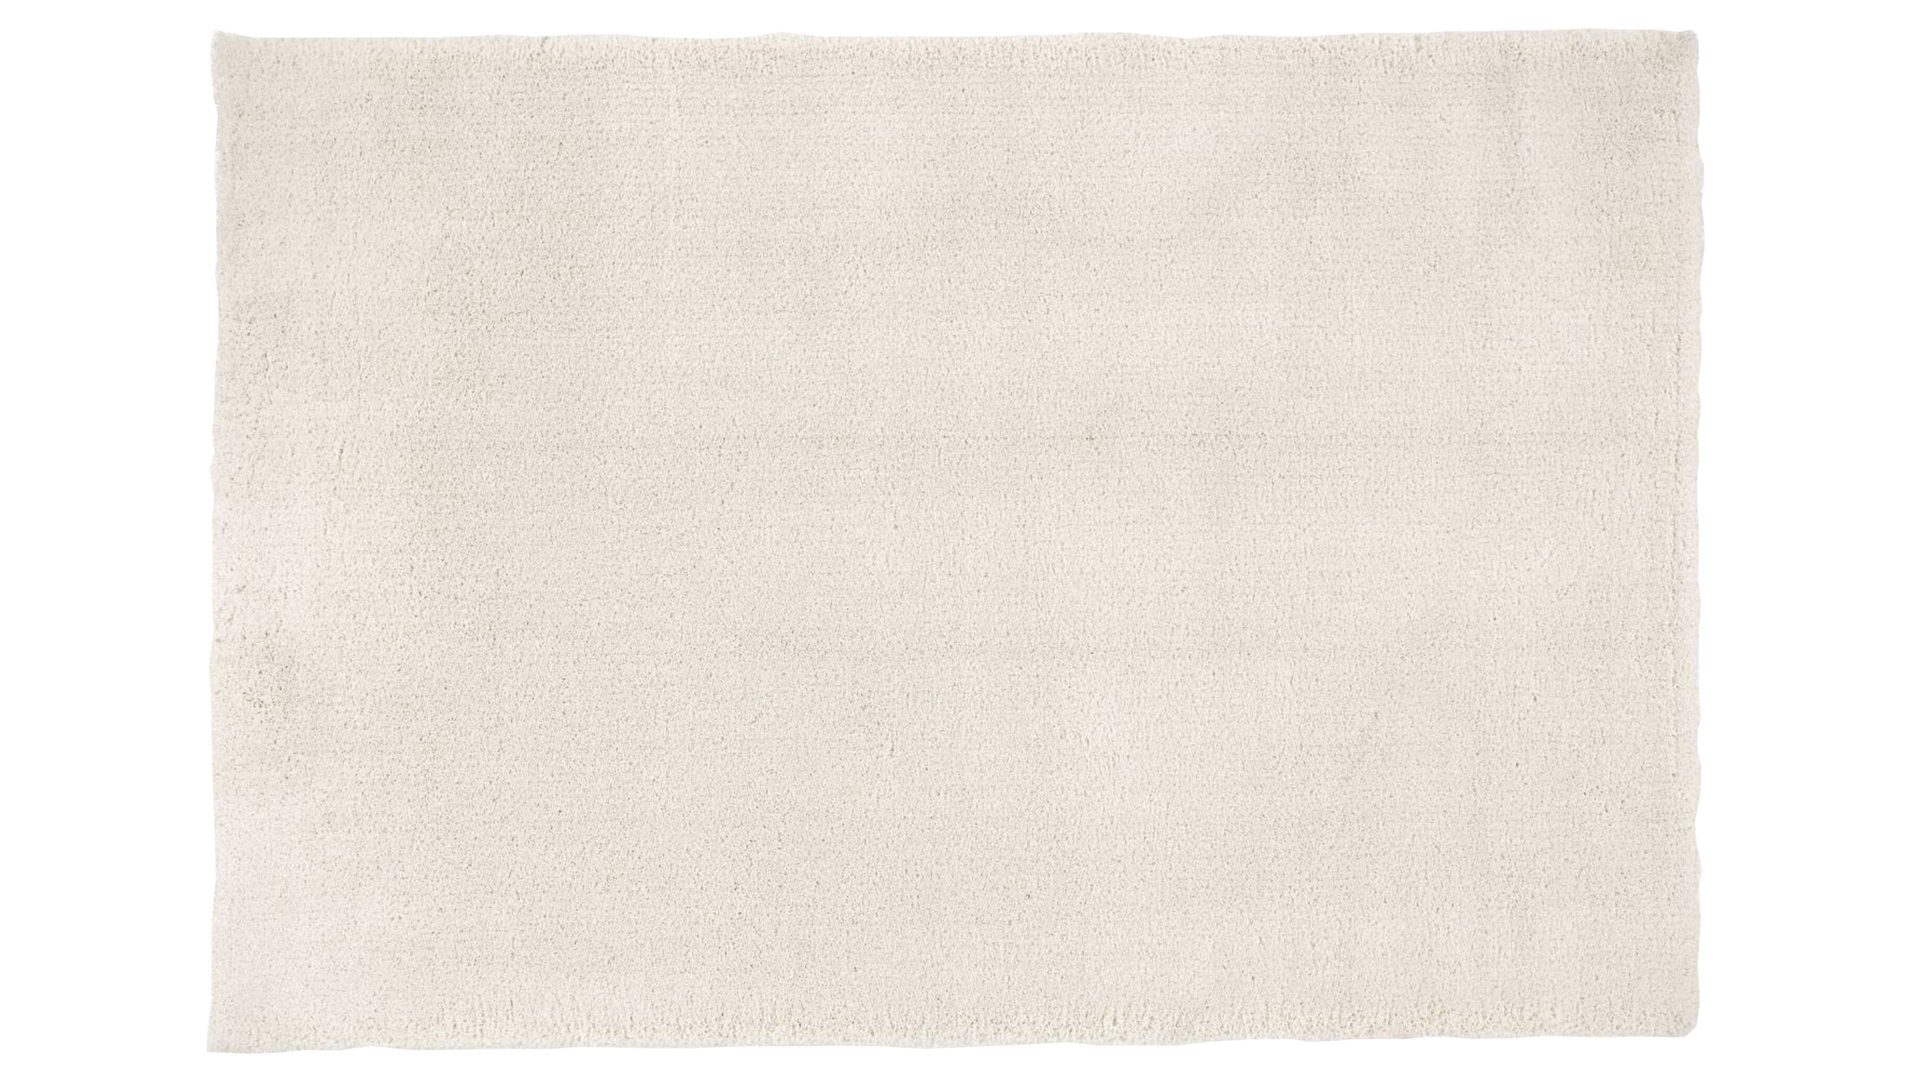 Shaggyteppich Oci aus Kunstfaser in Weiß Shaggyteppich Royal Shaggy für Ihre Wohnaccessoires cremefarbene Kunstfaser – ca. 160 x 230 cm